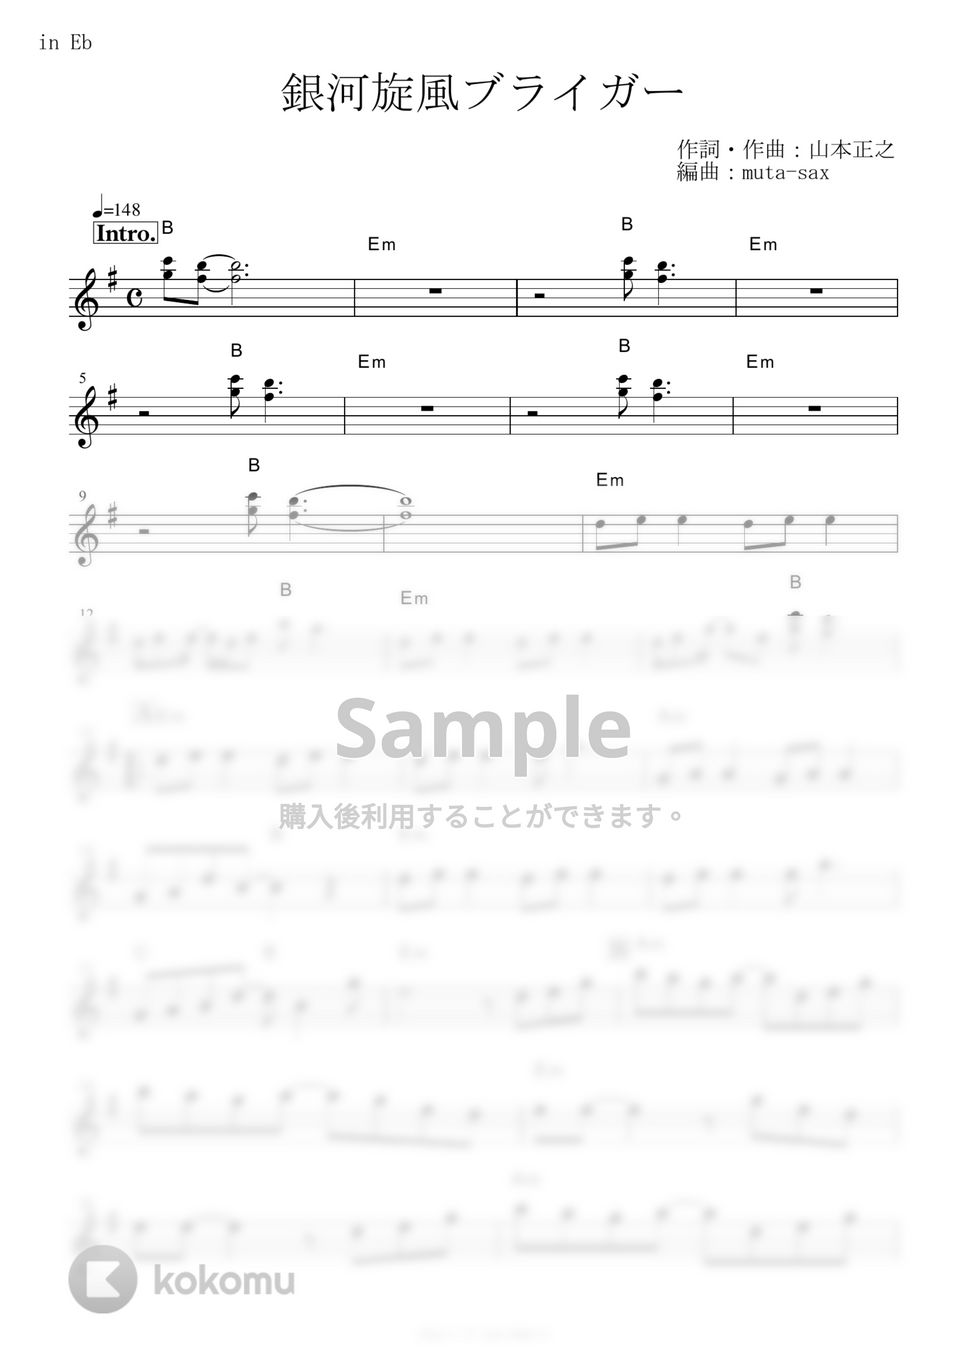 たいらいさお - 銀河旋風ブライガー (『銀河旋風ブライガー』 / in Eb) by muta-sax